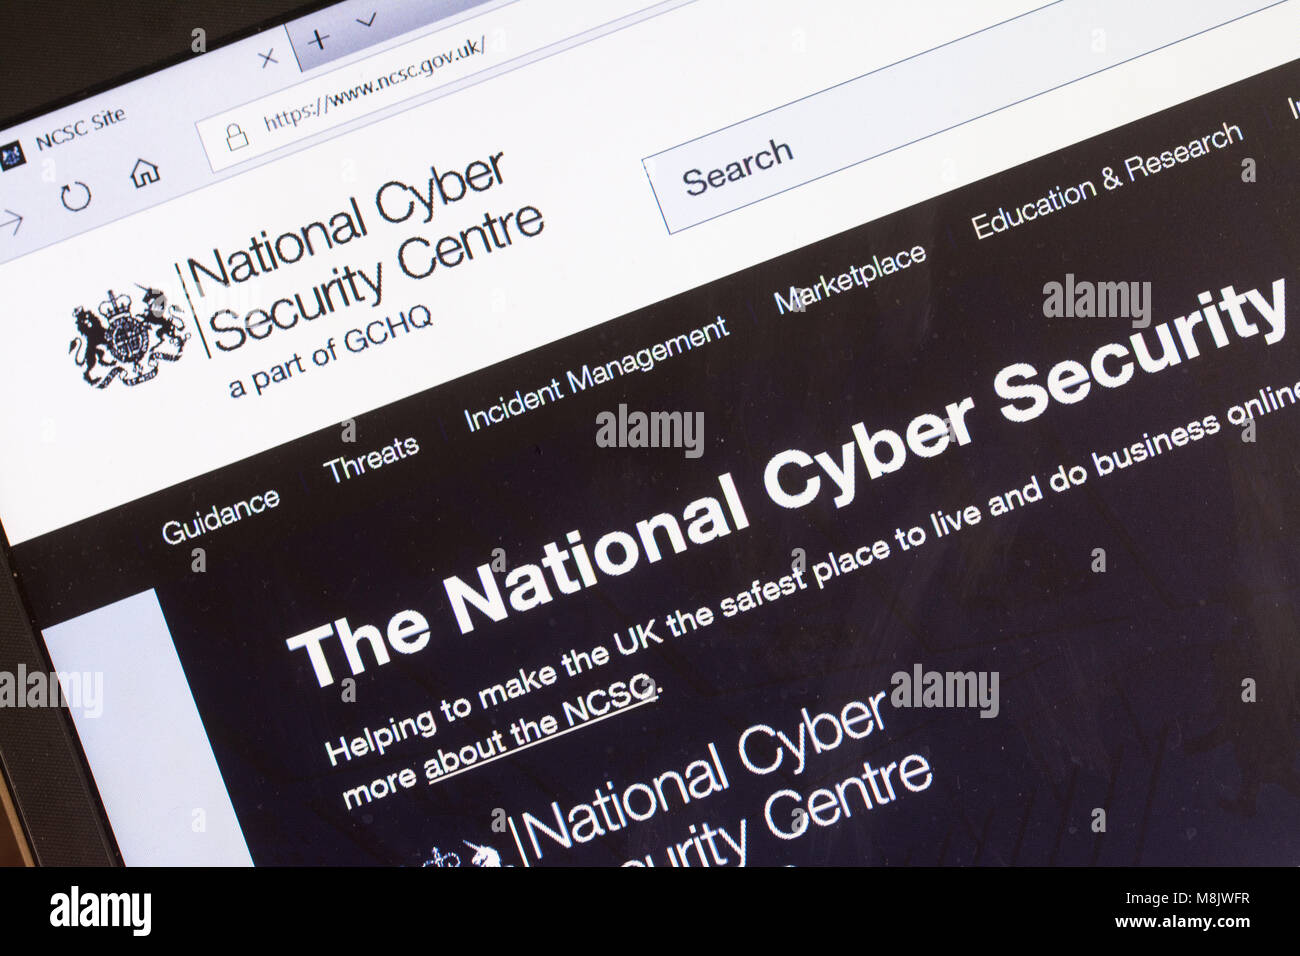 Capture d'écran de l'ordinateur d'NCSC.gov site (Le National Cyber Security Center) Banque D'Images